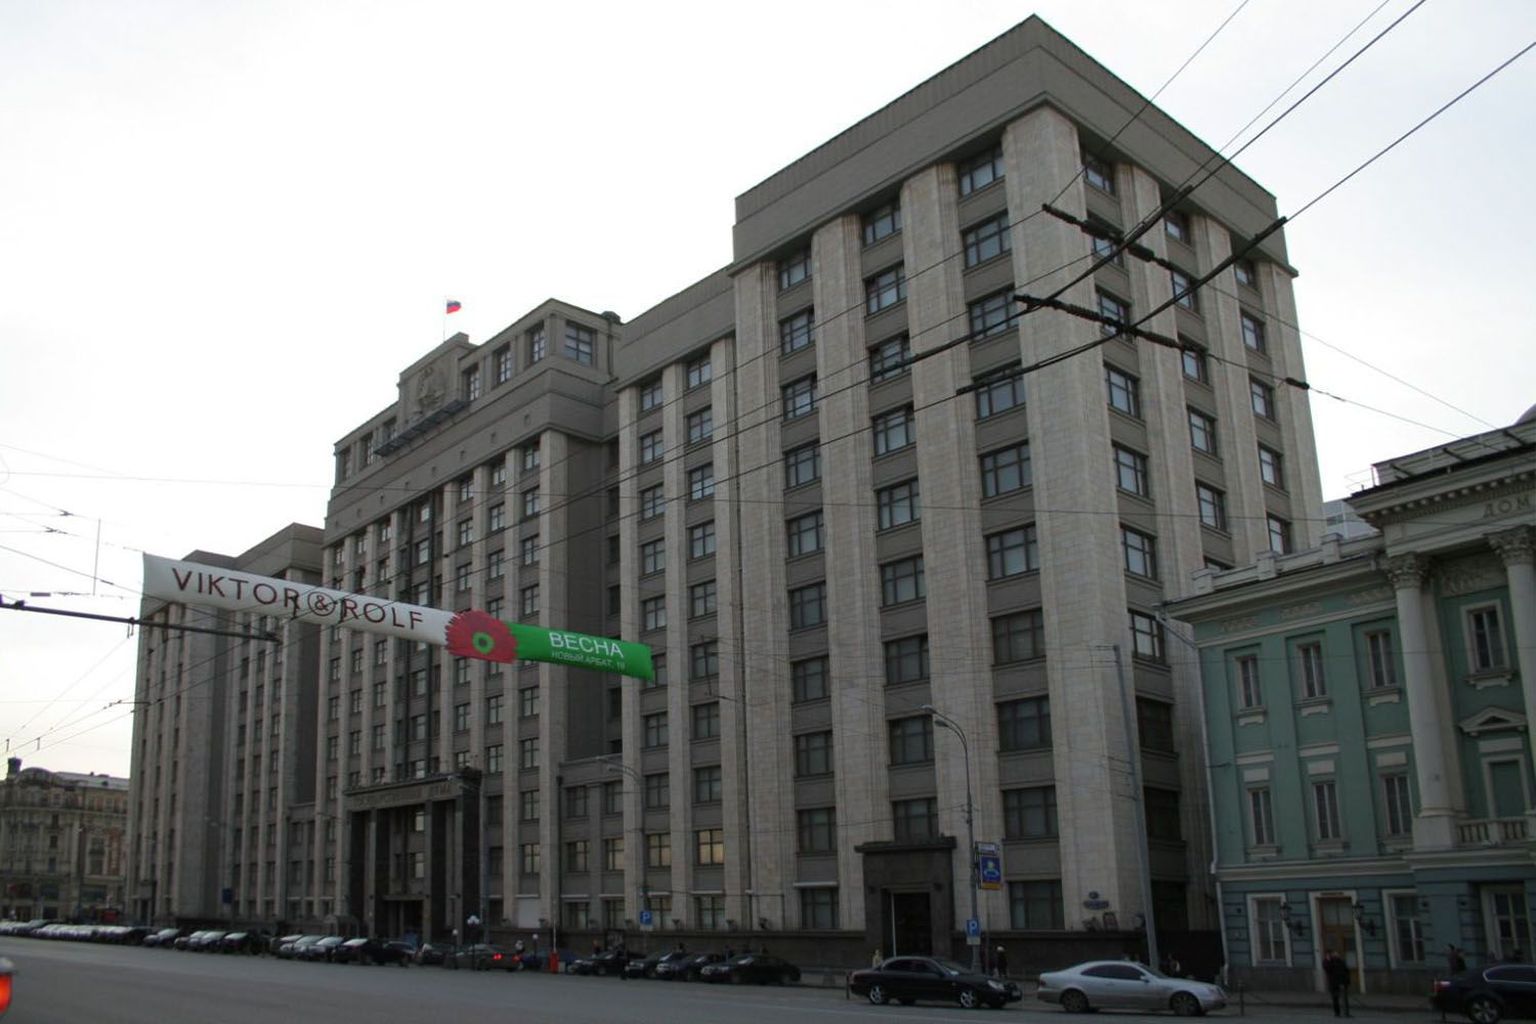 Vene riigiduuma hoone.